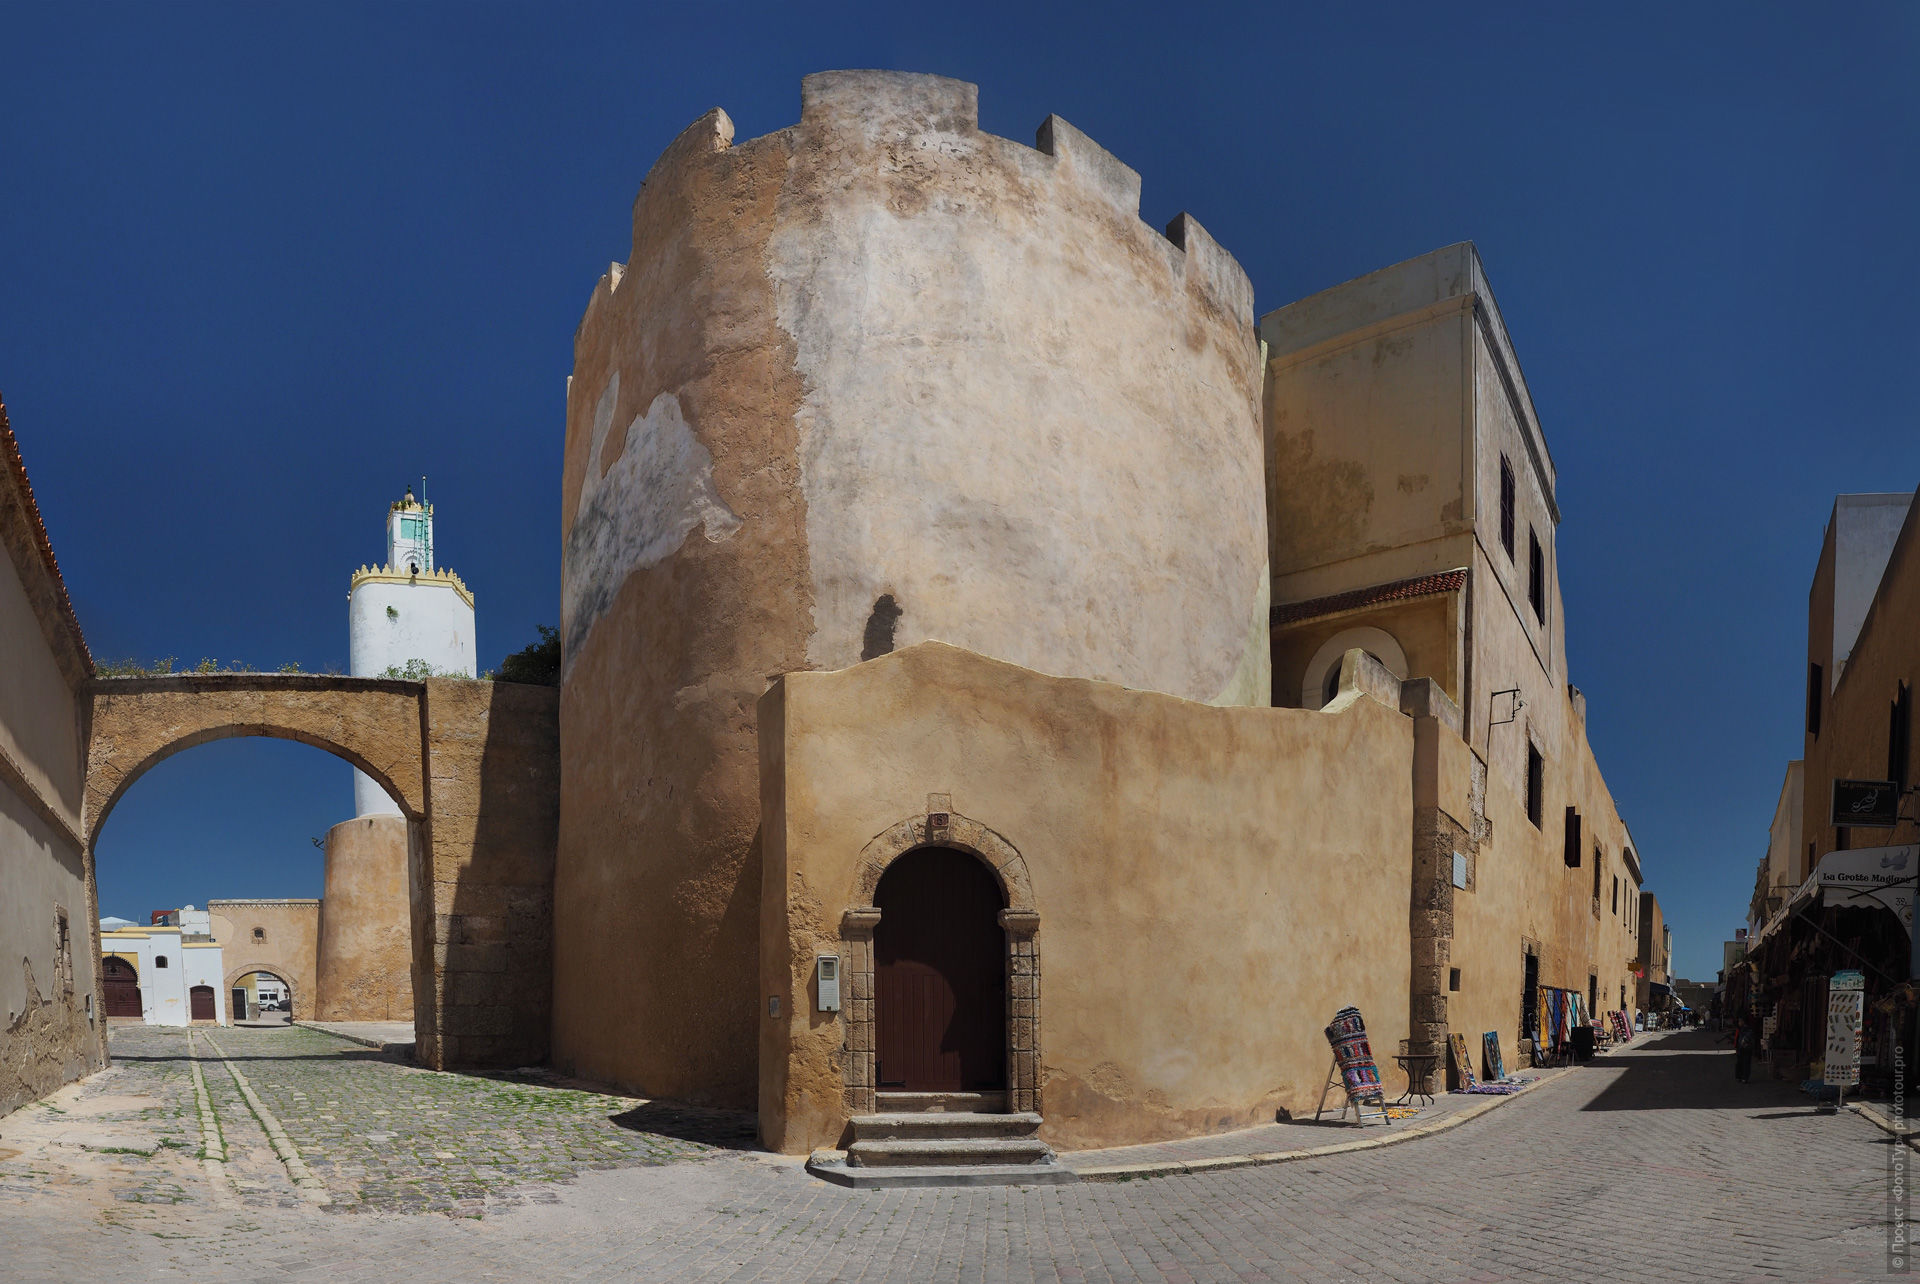 Португальская цистерна, Эль-Джадида, Марокко.